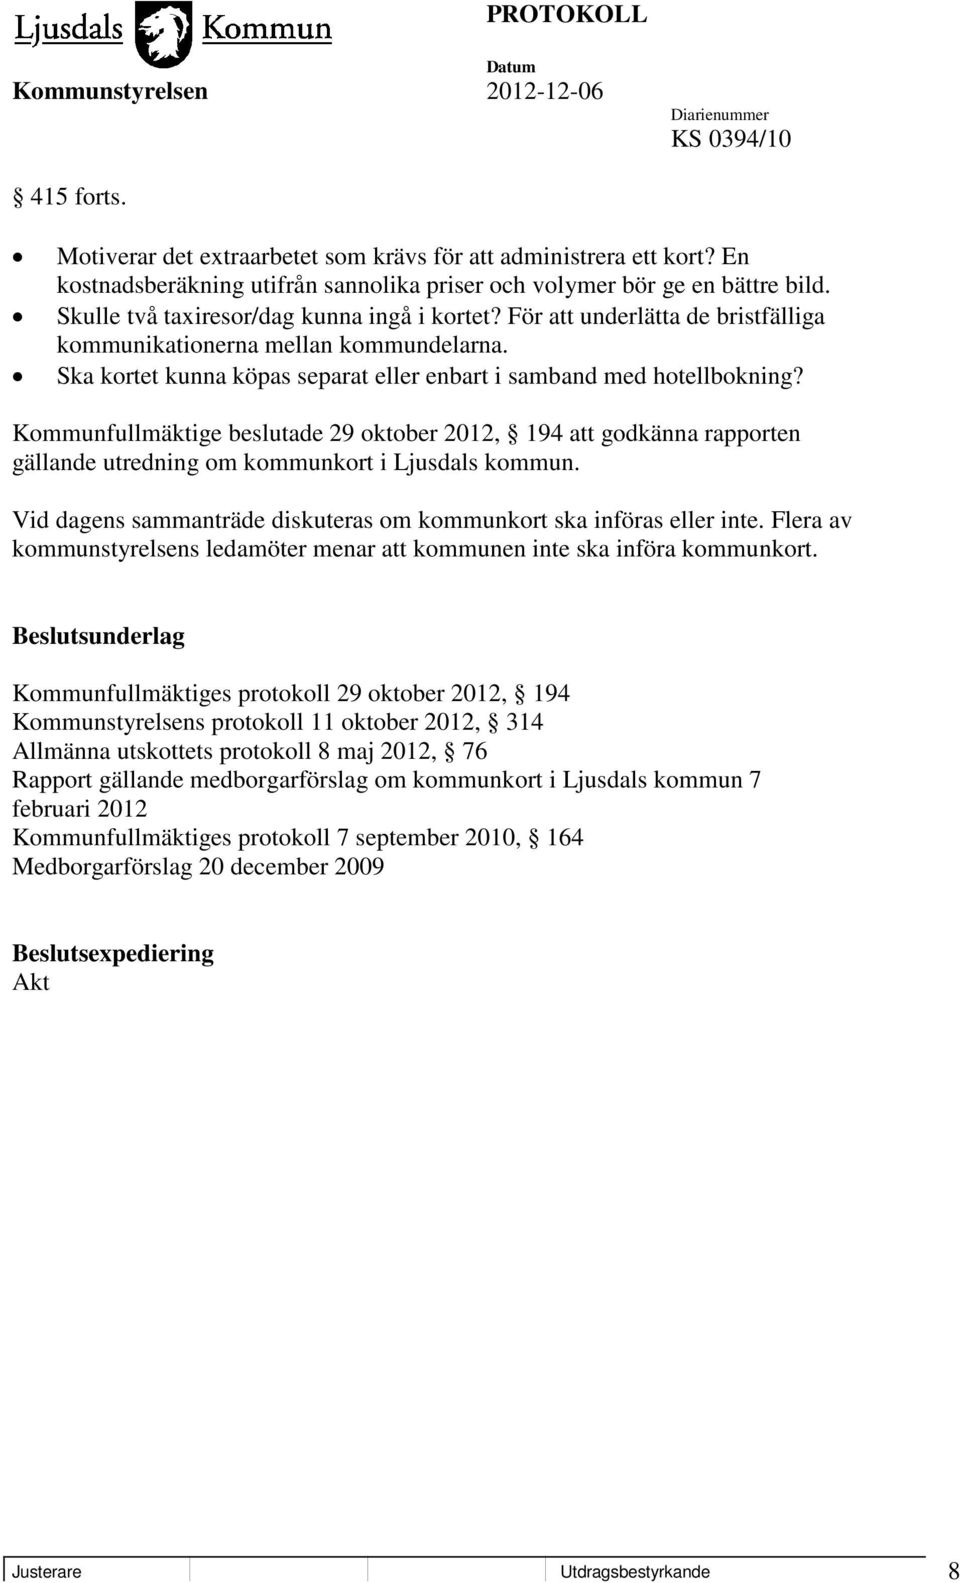 Kommunfullmäktige beslutade 29 oktober 2012, 194 att godkänna rapporten gällande utredning om kommunkort i Ljusdals kommun. Vid dagens sammanträde diskuteras om kommunkort ska införas eller inte.